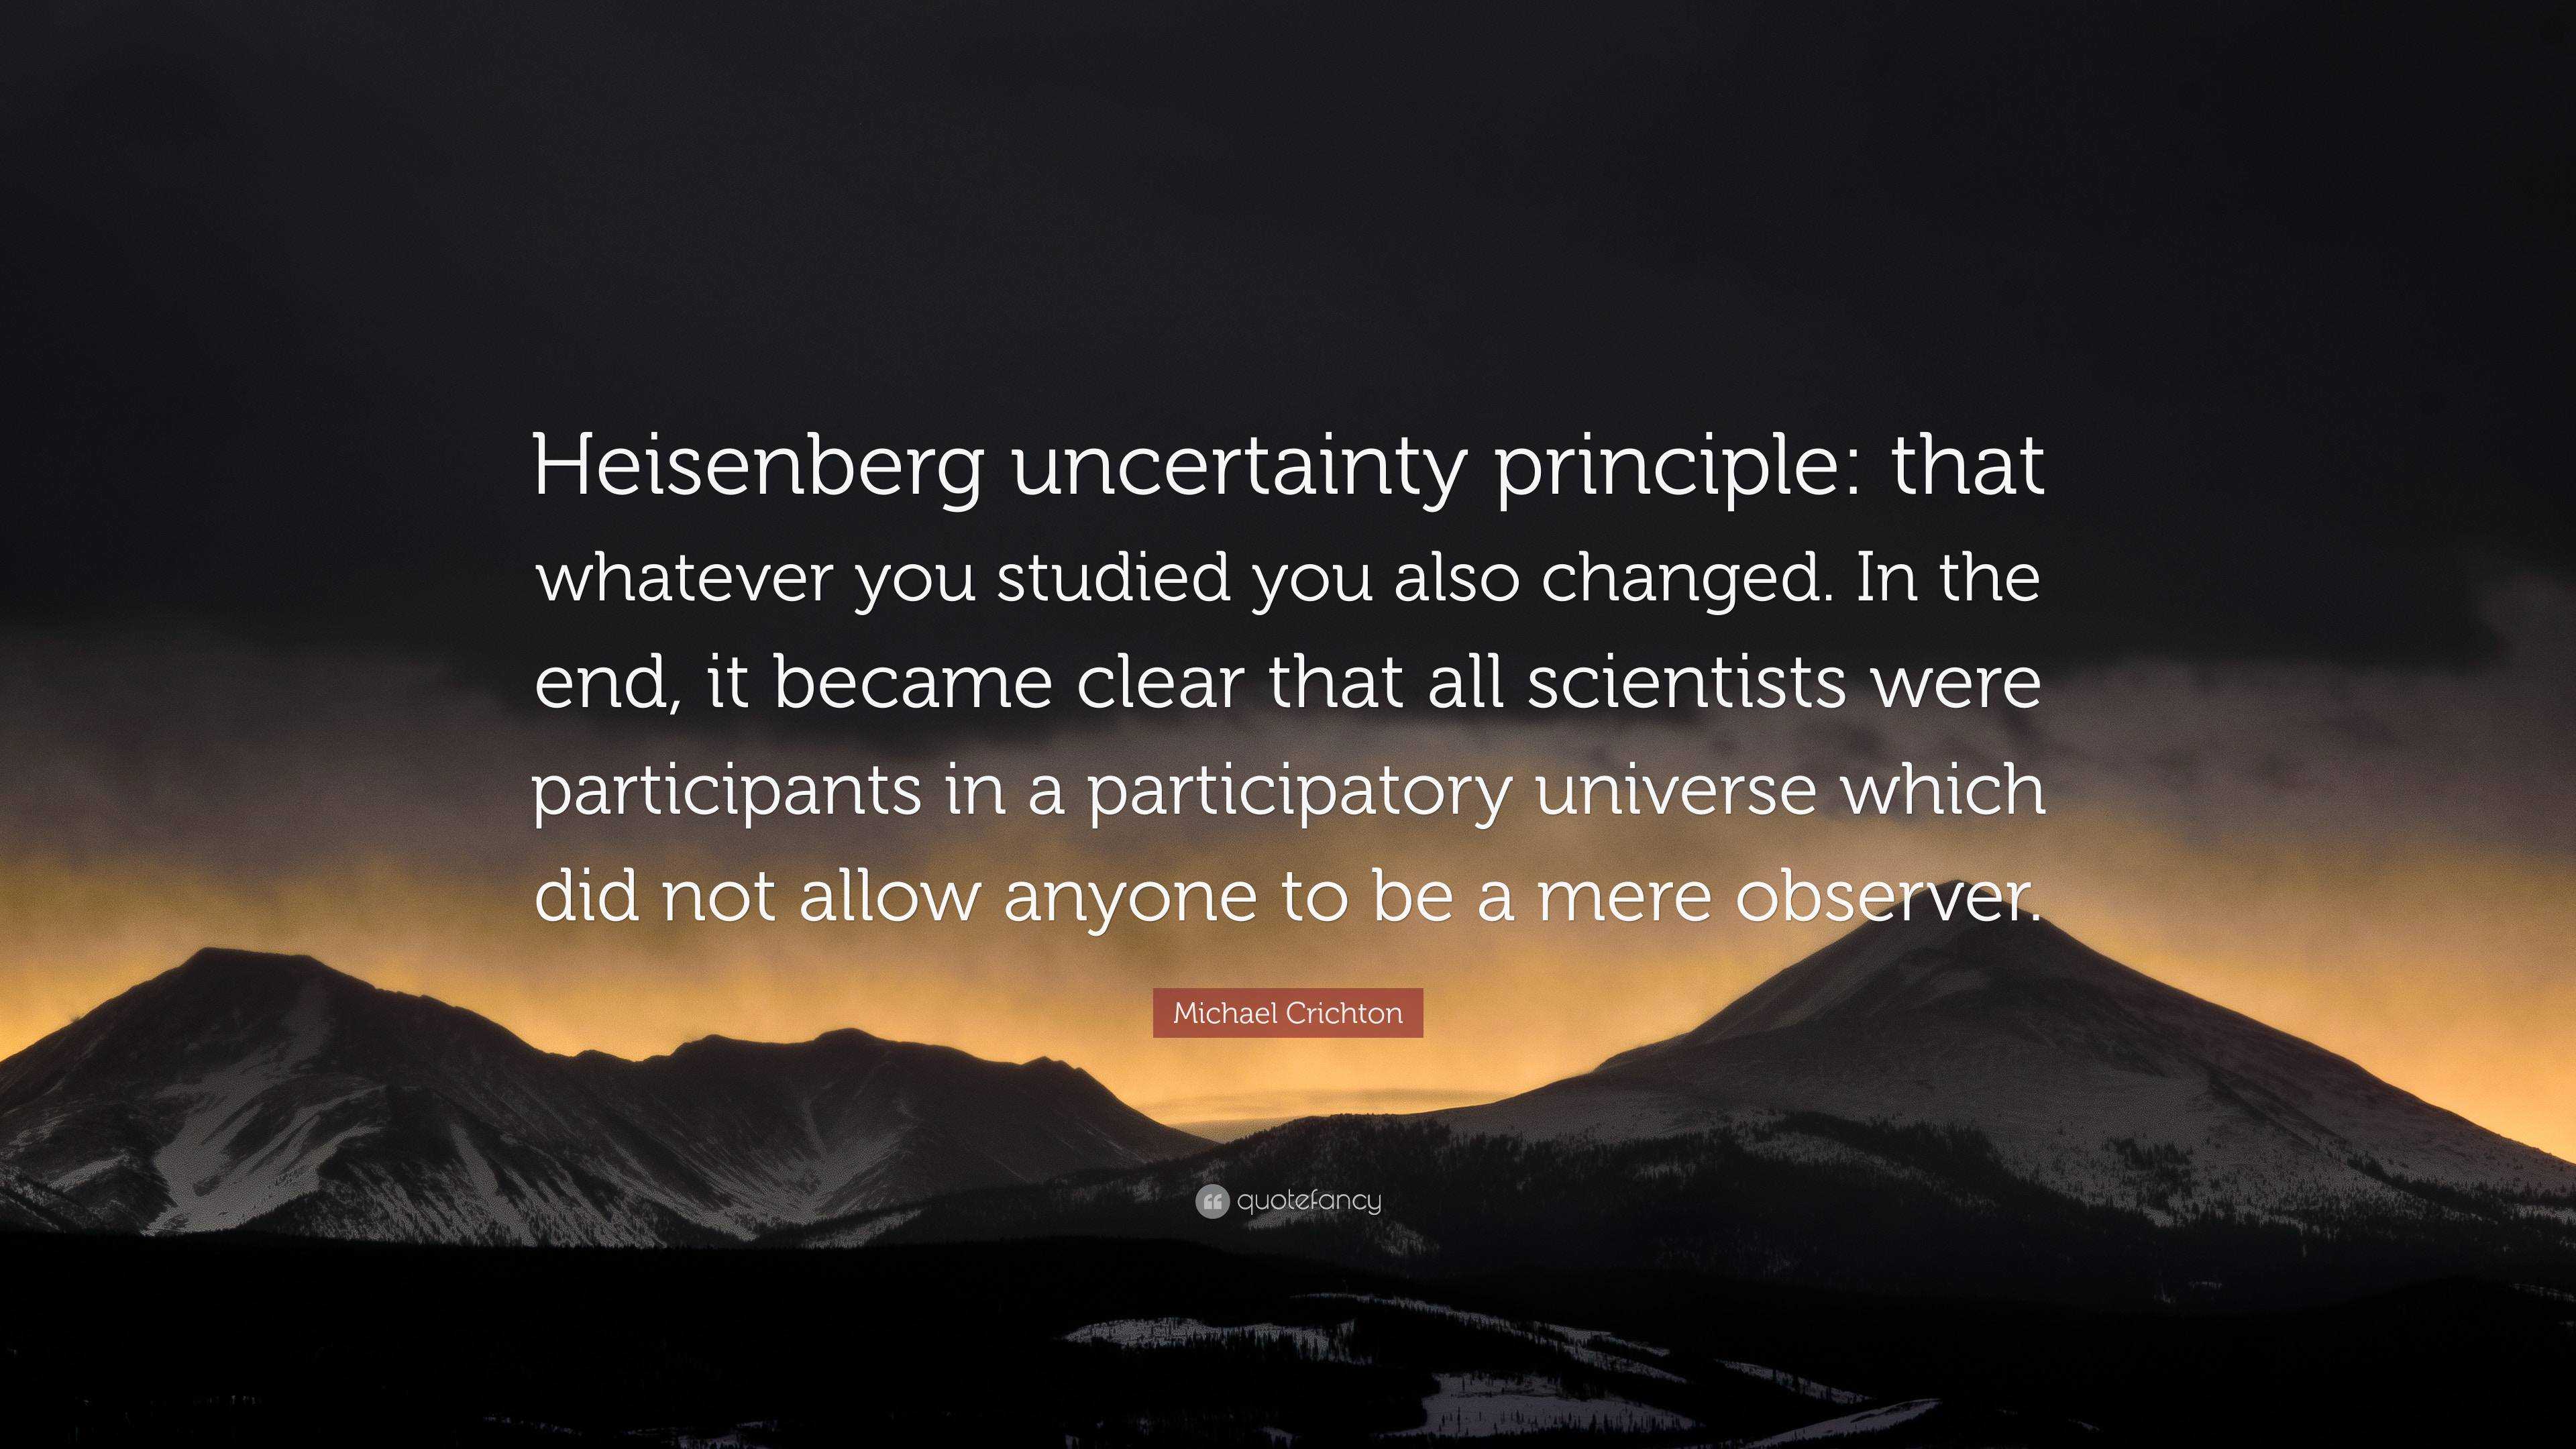 heisenberg uncertainty principle wallpaper